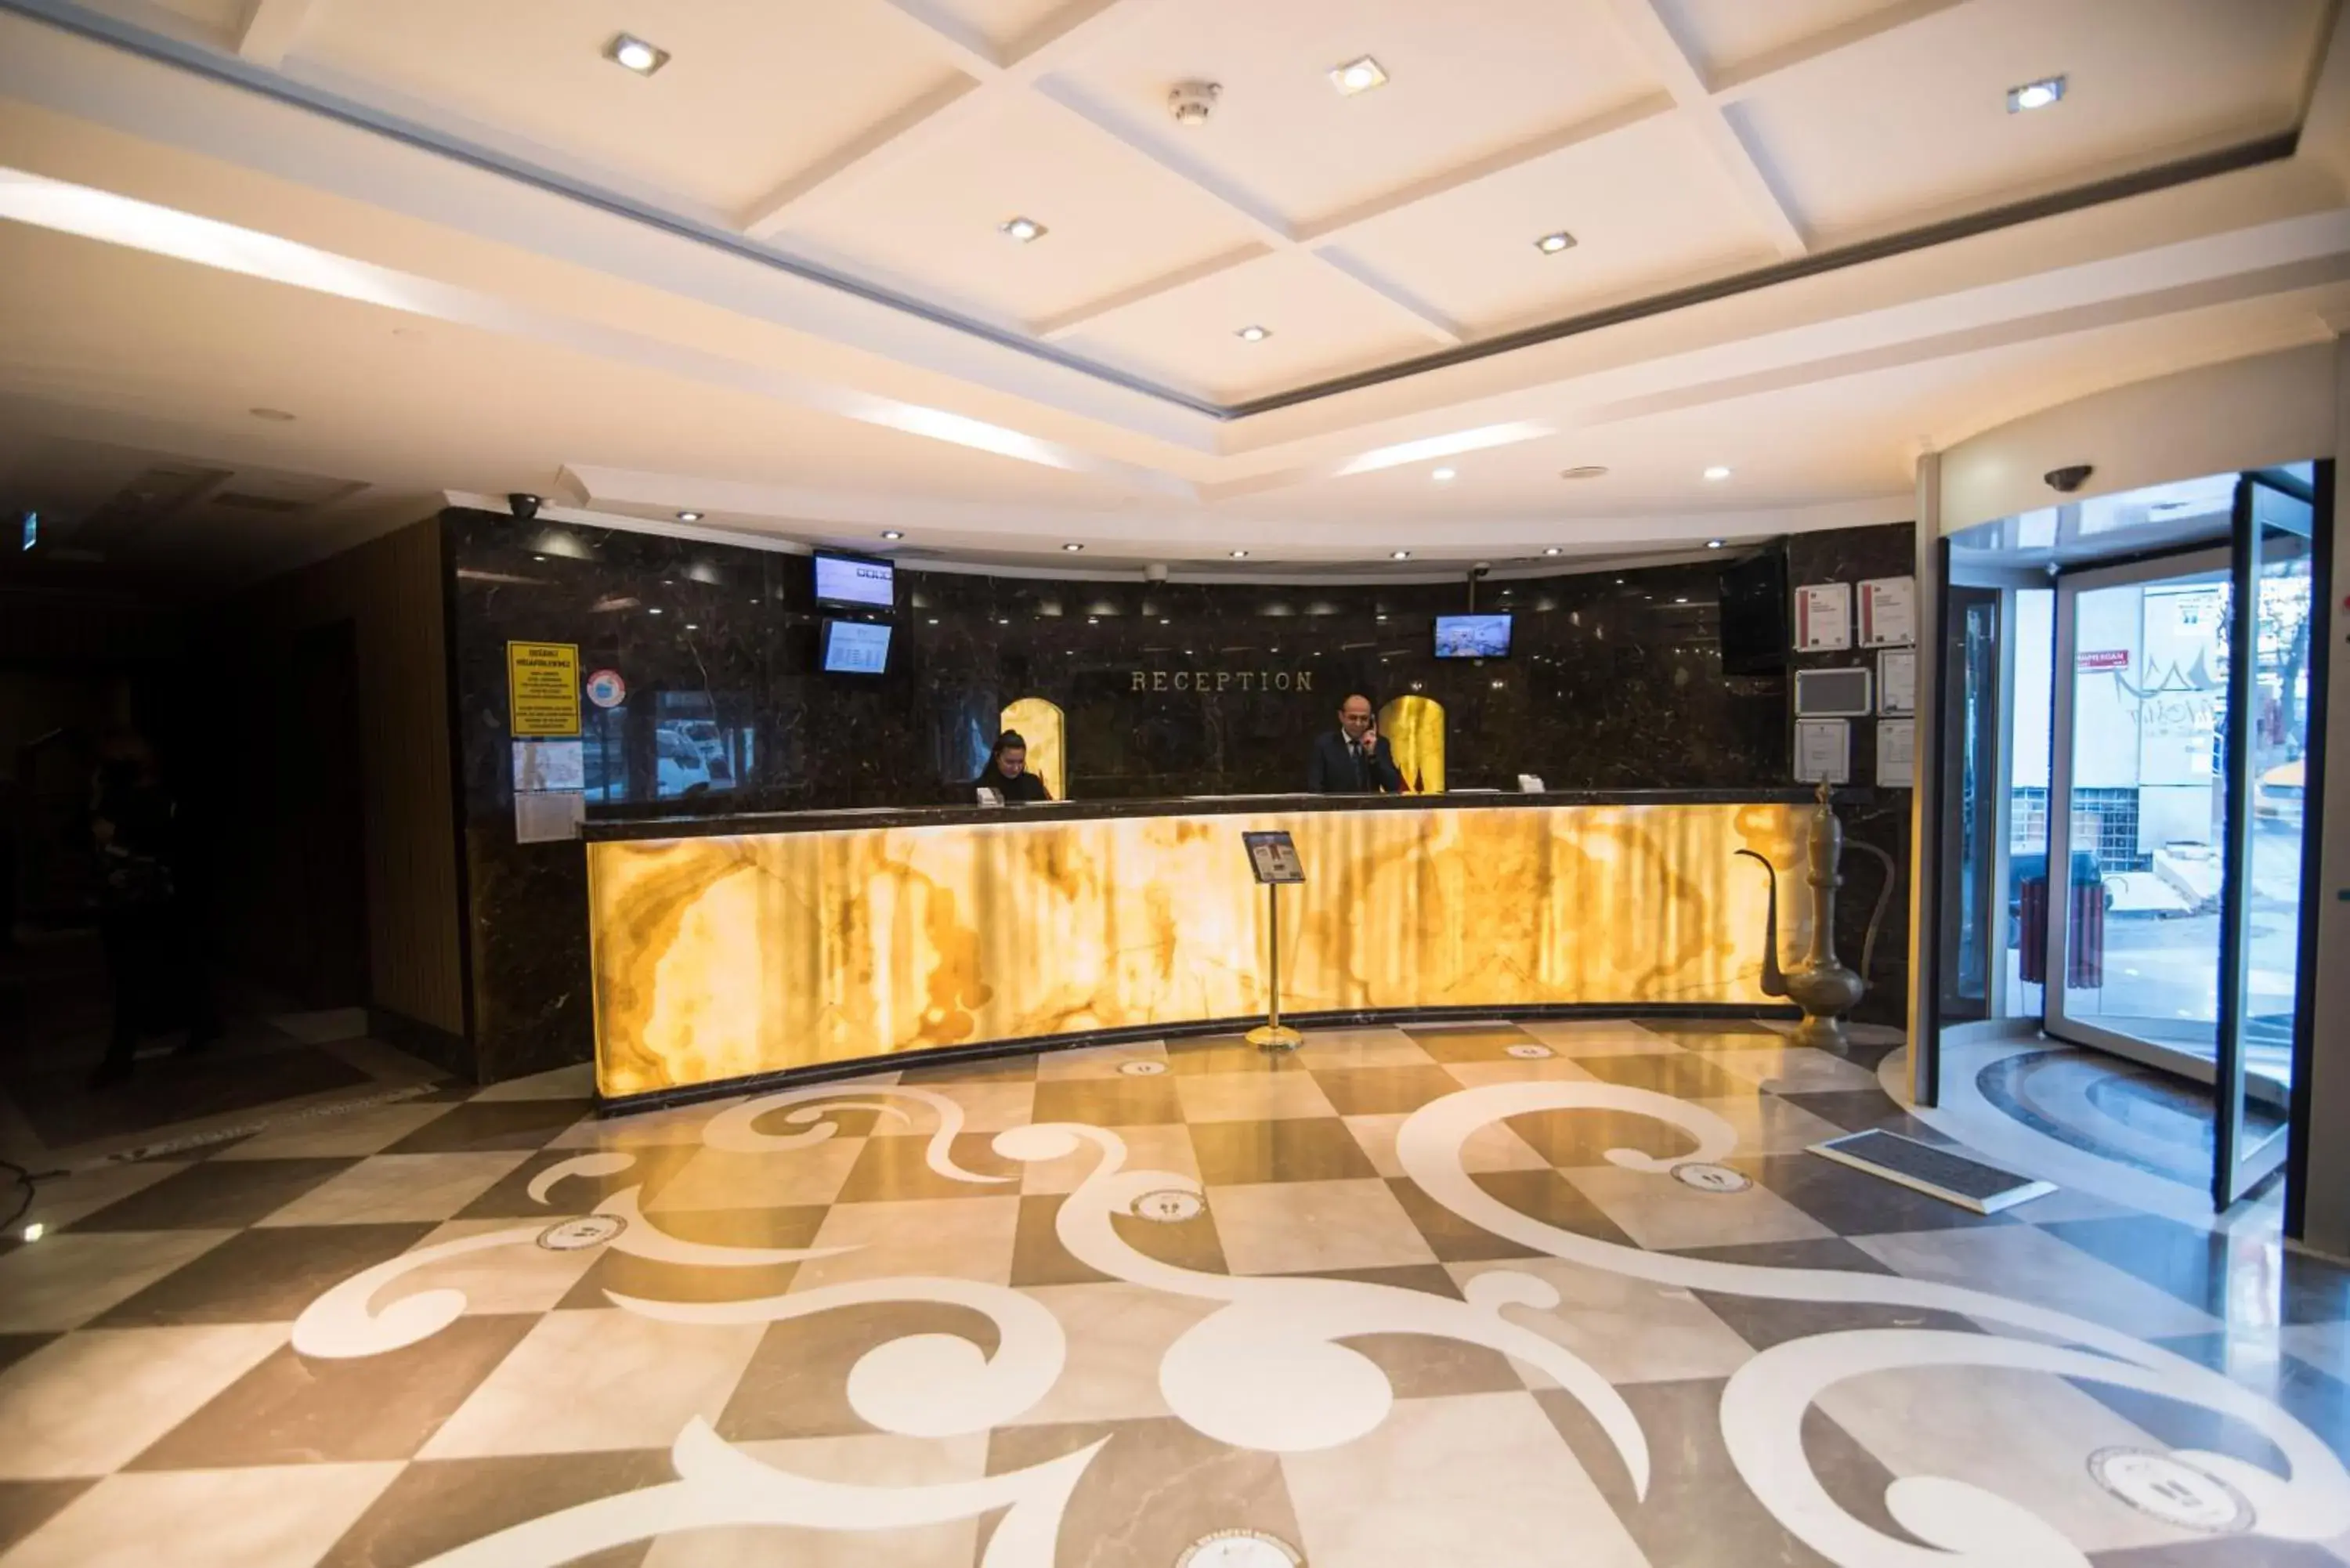 Lobby or reception, Lobby/Reception in Midmar Hotel